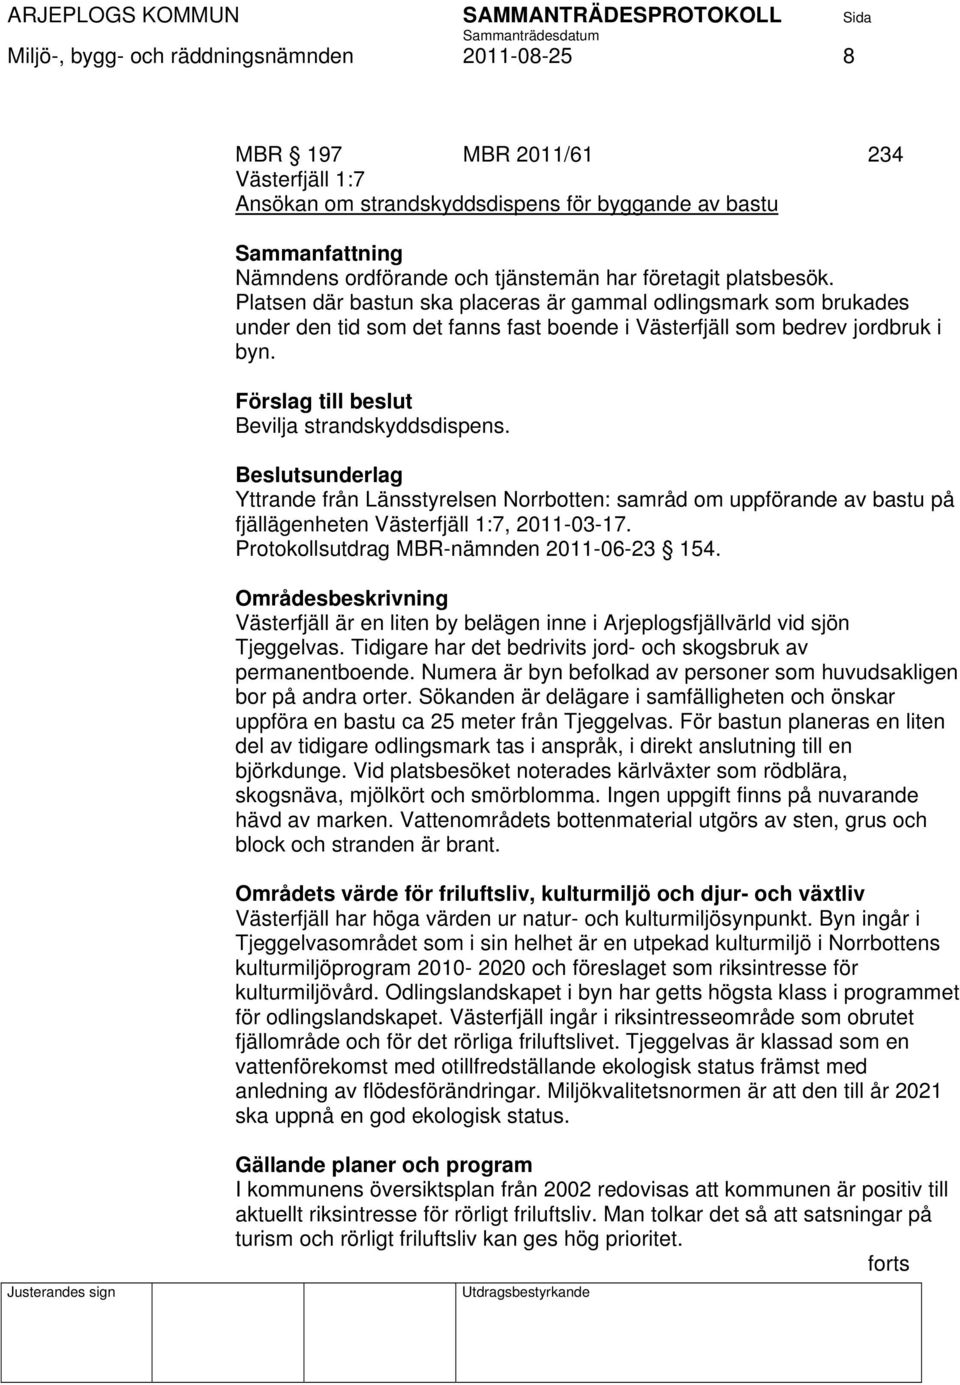 Förslag till beslut Bevilja strandskyddsdispens. Yttrande från Länsstyrelsen Norrbotten: samråd om uppförande av bastu på fjällägenheten Västerfjäll 1:7, 2011-03-17.